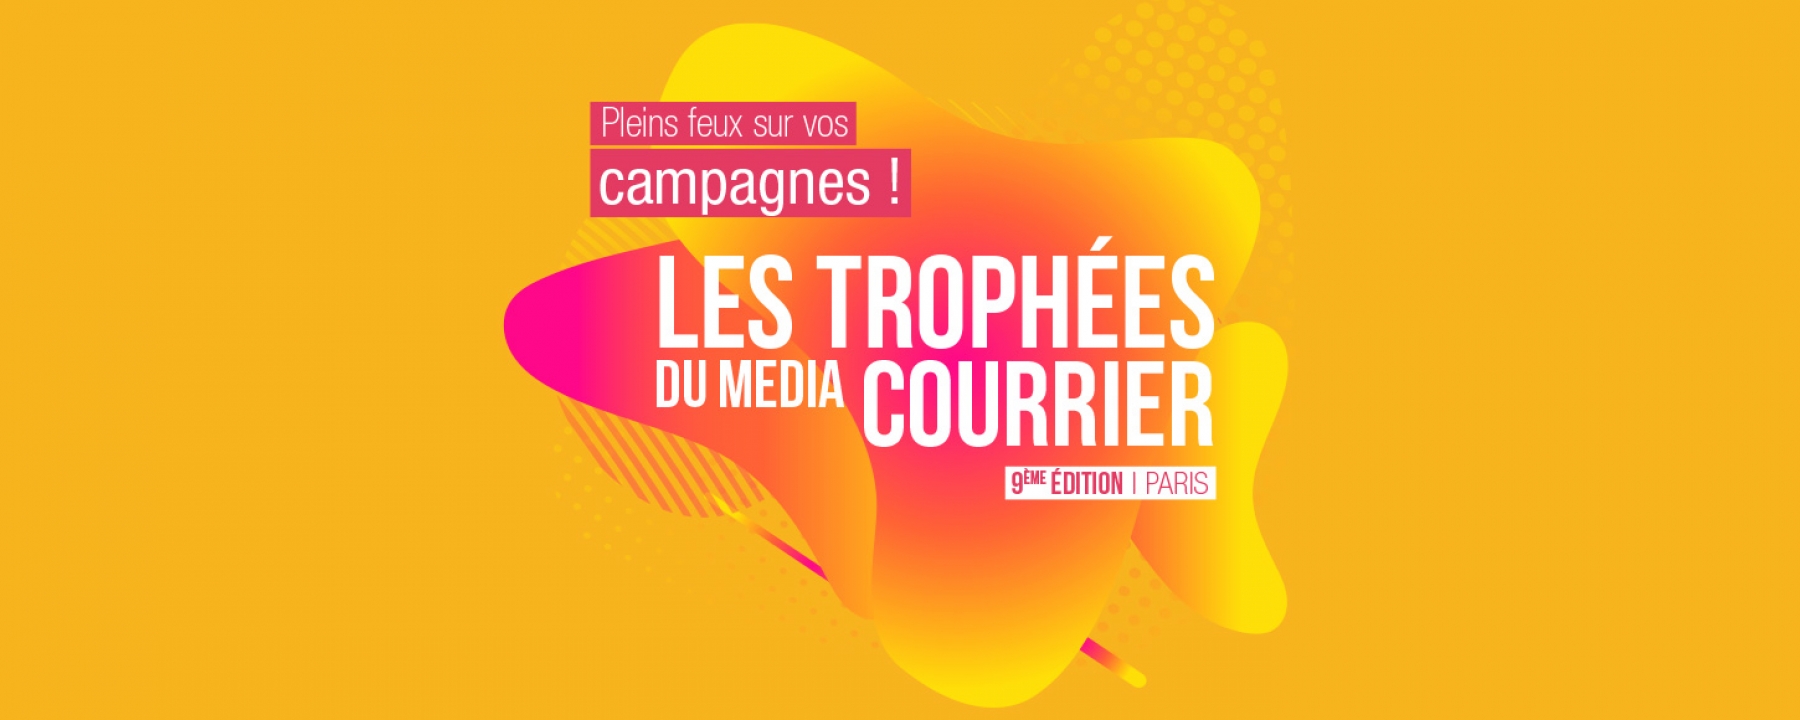 Les Trophées du Média Courrier 2020, un événement organisé par La Poste